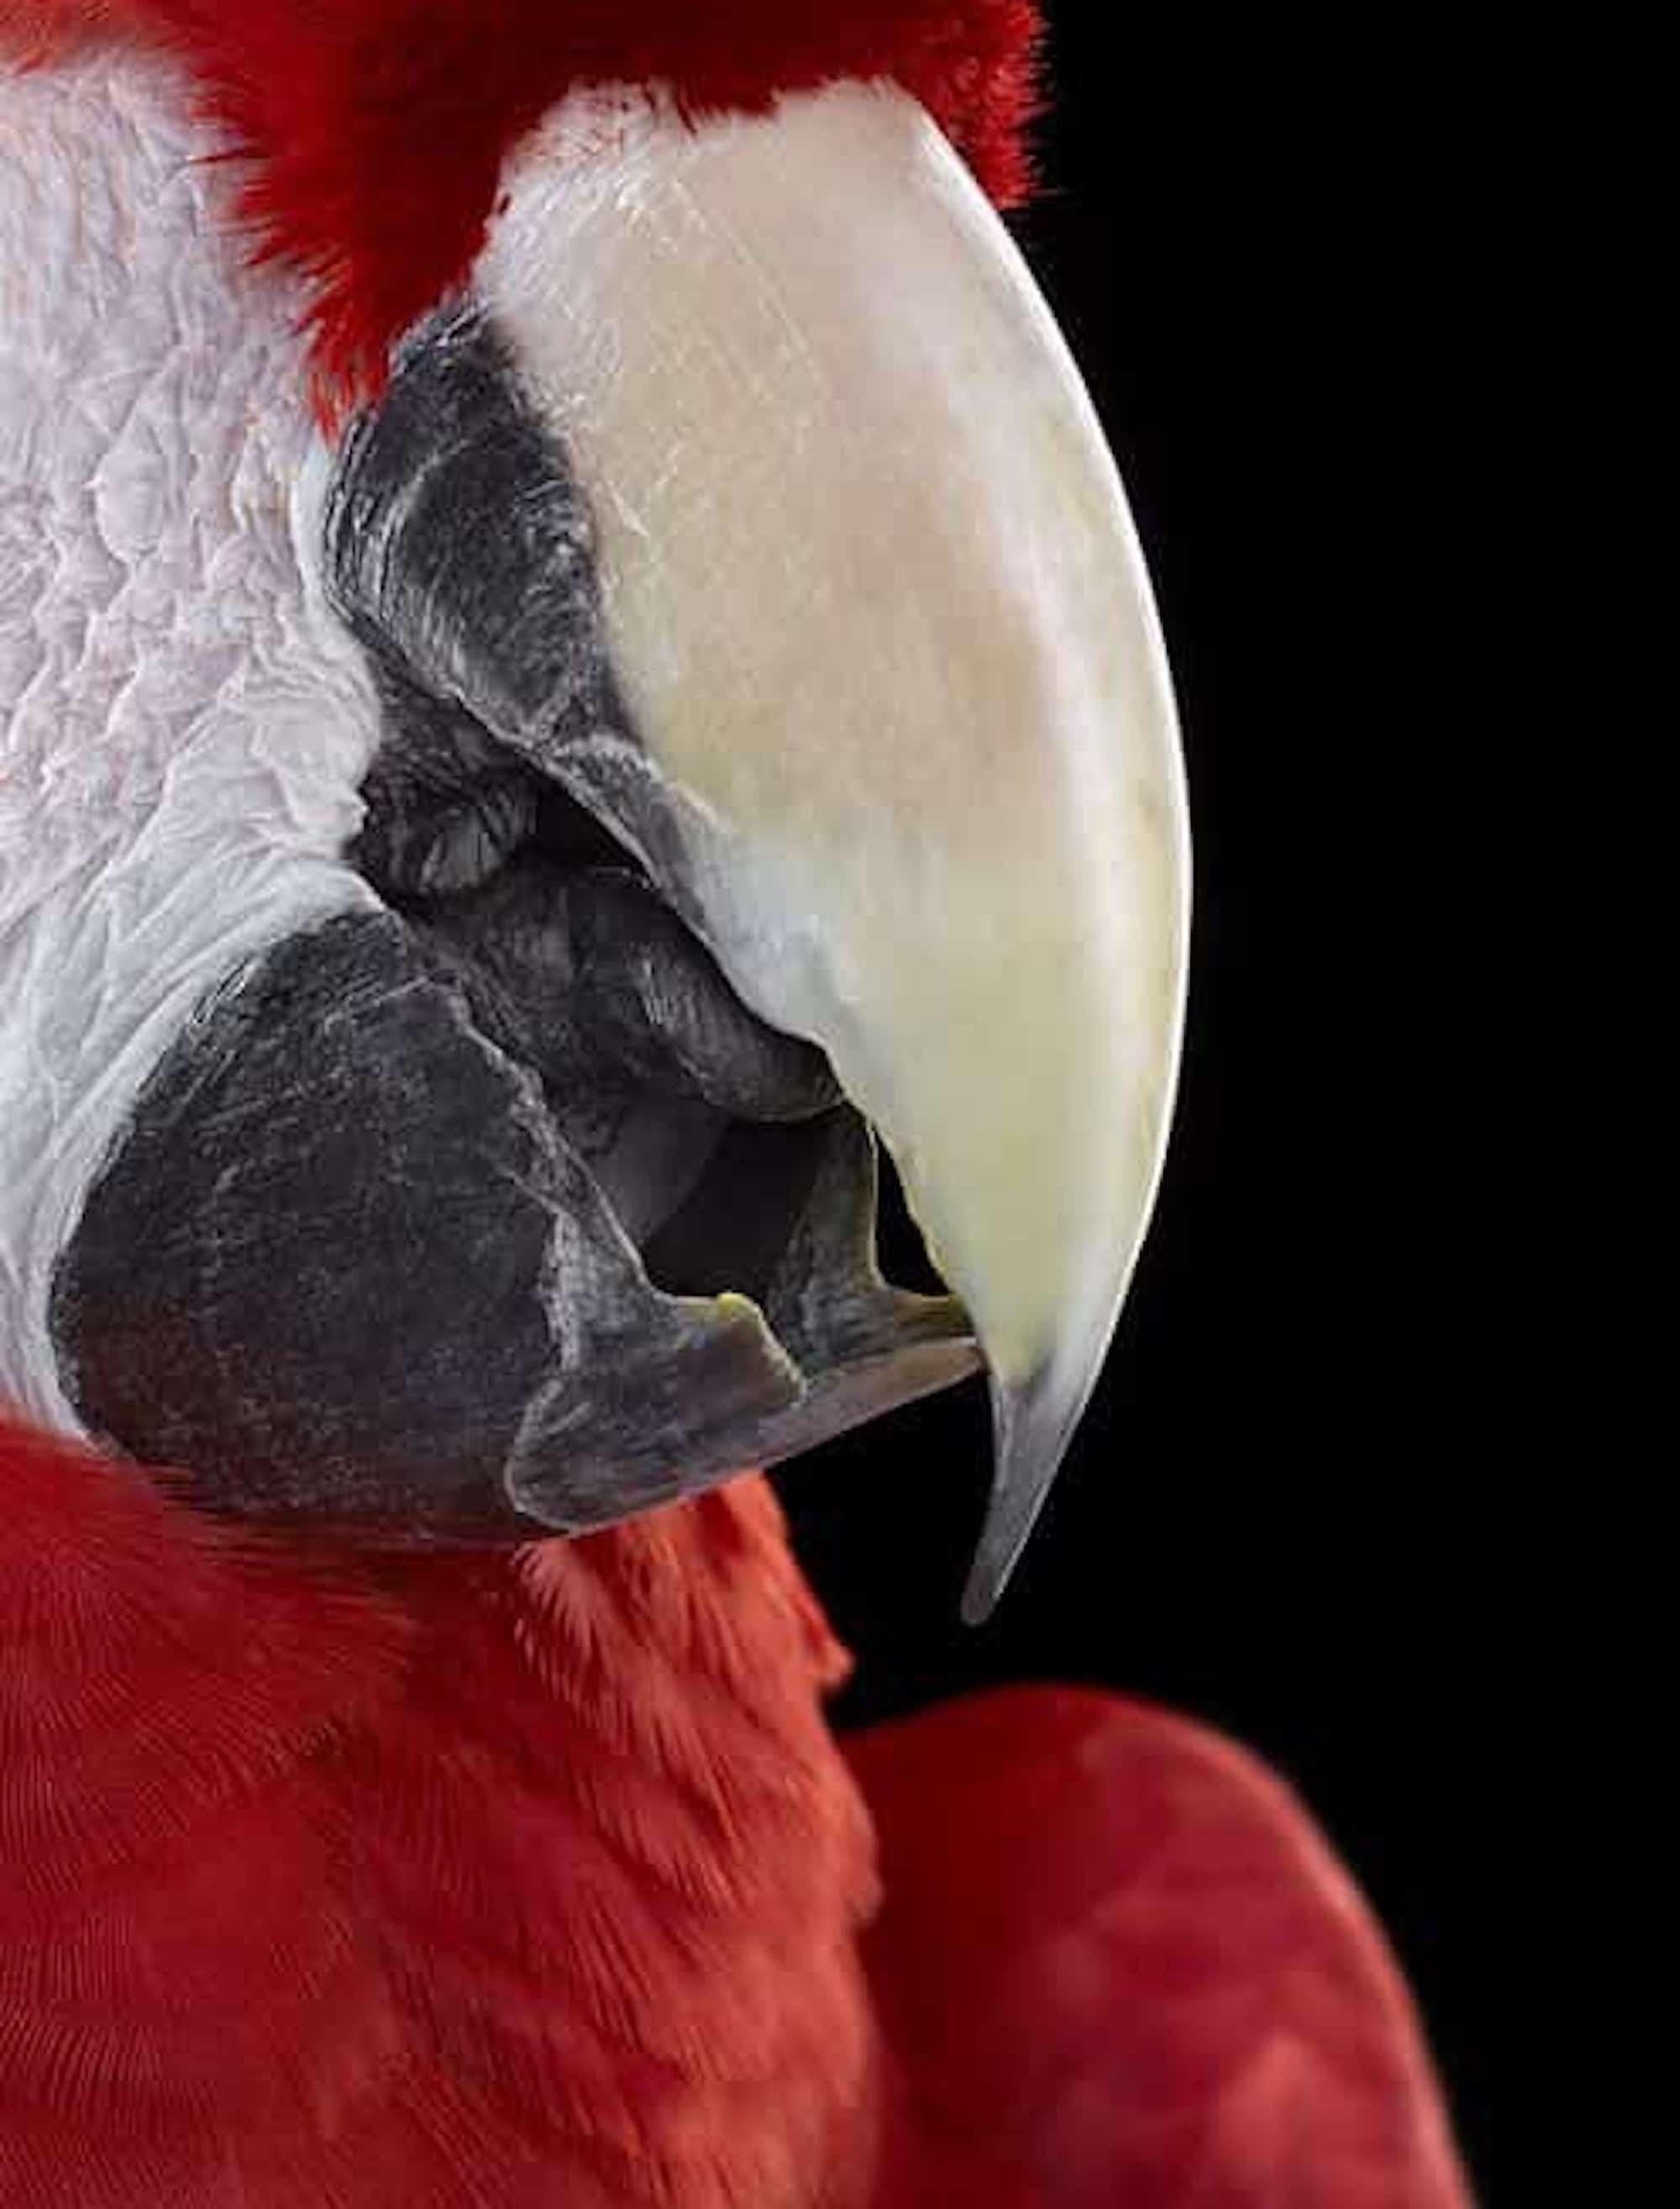 Scarlet Macaw #1 by Brad Wilson - Animal portrait photography, wild bird For Sale 4